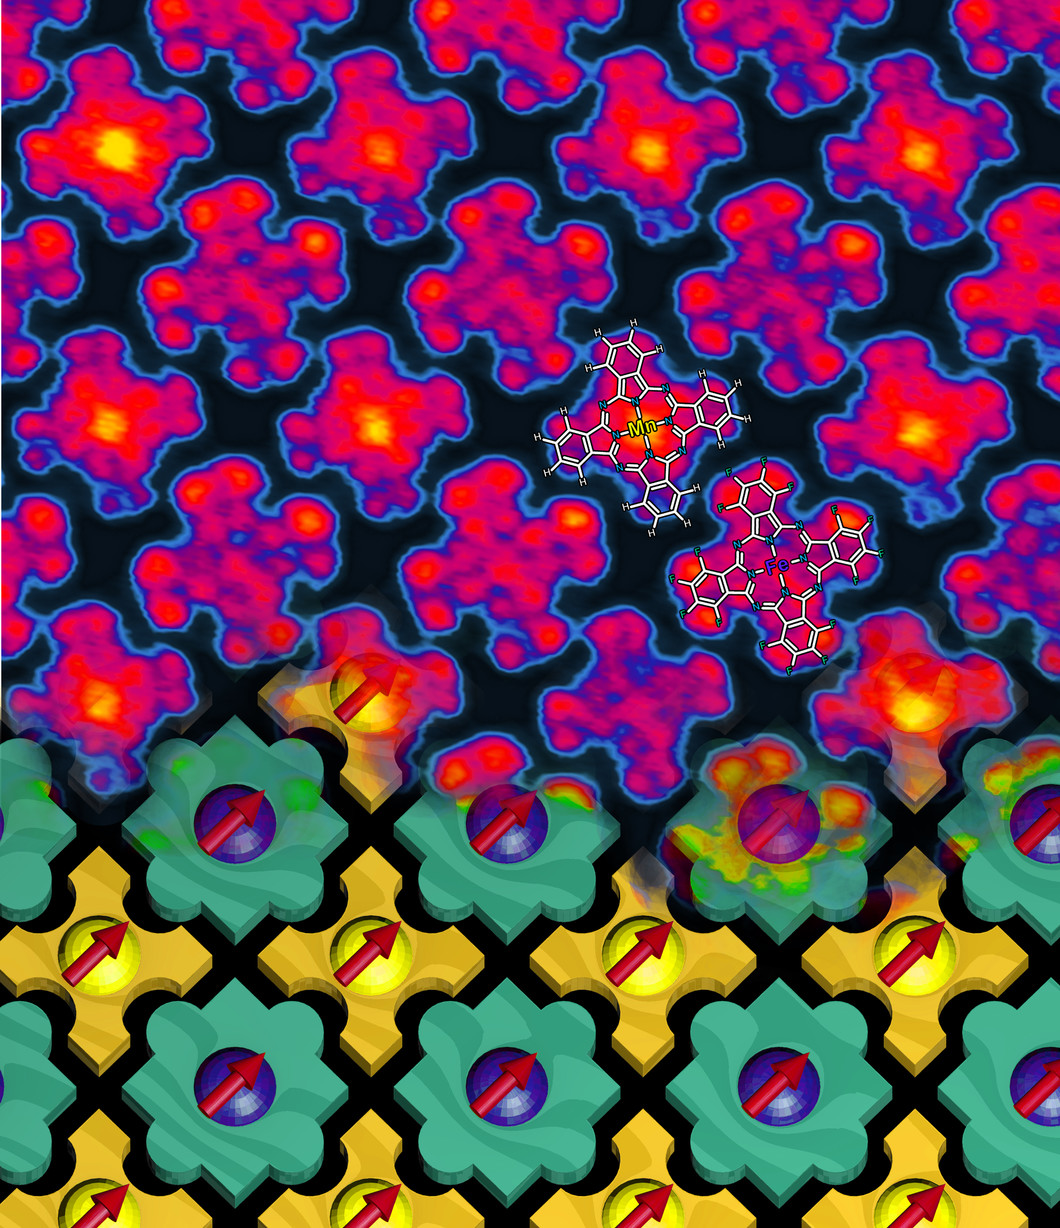 Le nanodamier magnétique. En haut : visualisation des molécules au microscope à effet tunnel. La structure moléculaire apparaît dans deux d’entre elles. En bas : représentation schématique de l’autoorganisation des molécules, qui s’imbriquent comme les pièces d’un puzzle et se combinent toujours en alternance.